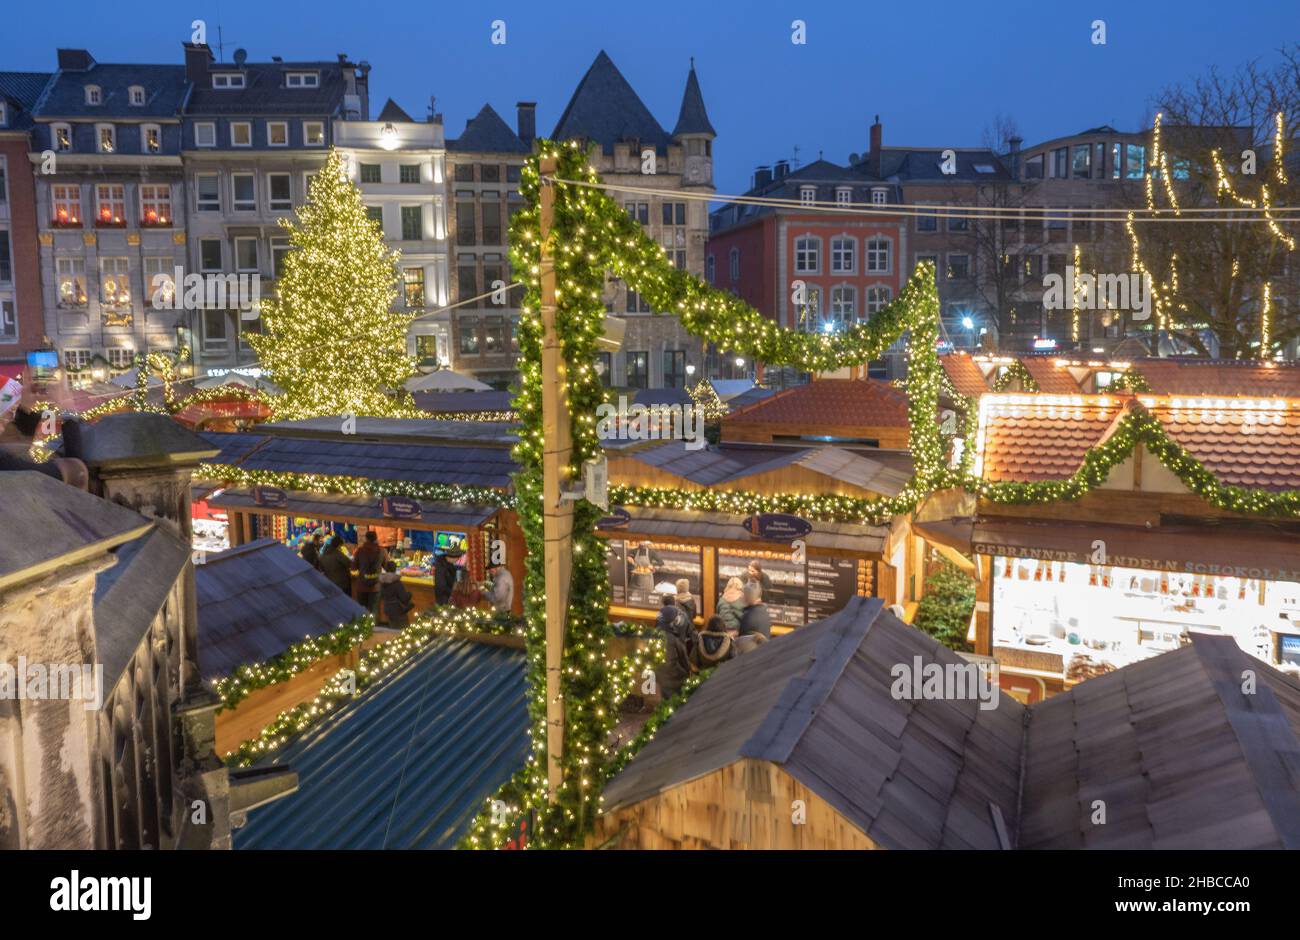 Aachen -Der Aachener Weihnachtsmarkt lockt jährlich Hunderttausende Besucher auf die Plätze und in die Gassen rund um den Aachener Dom und das Rathaus Stock Photo